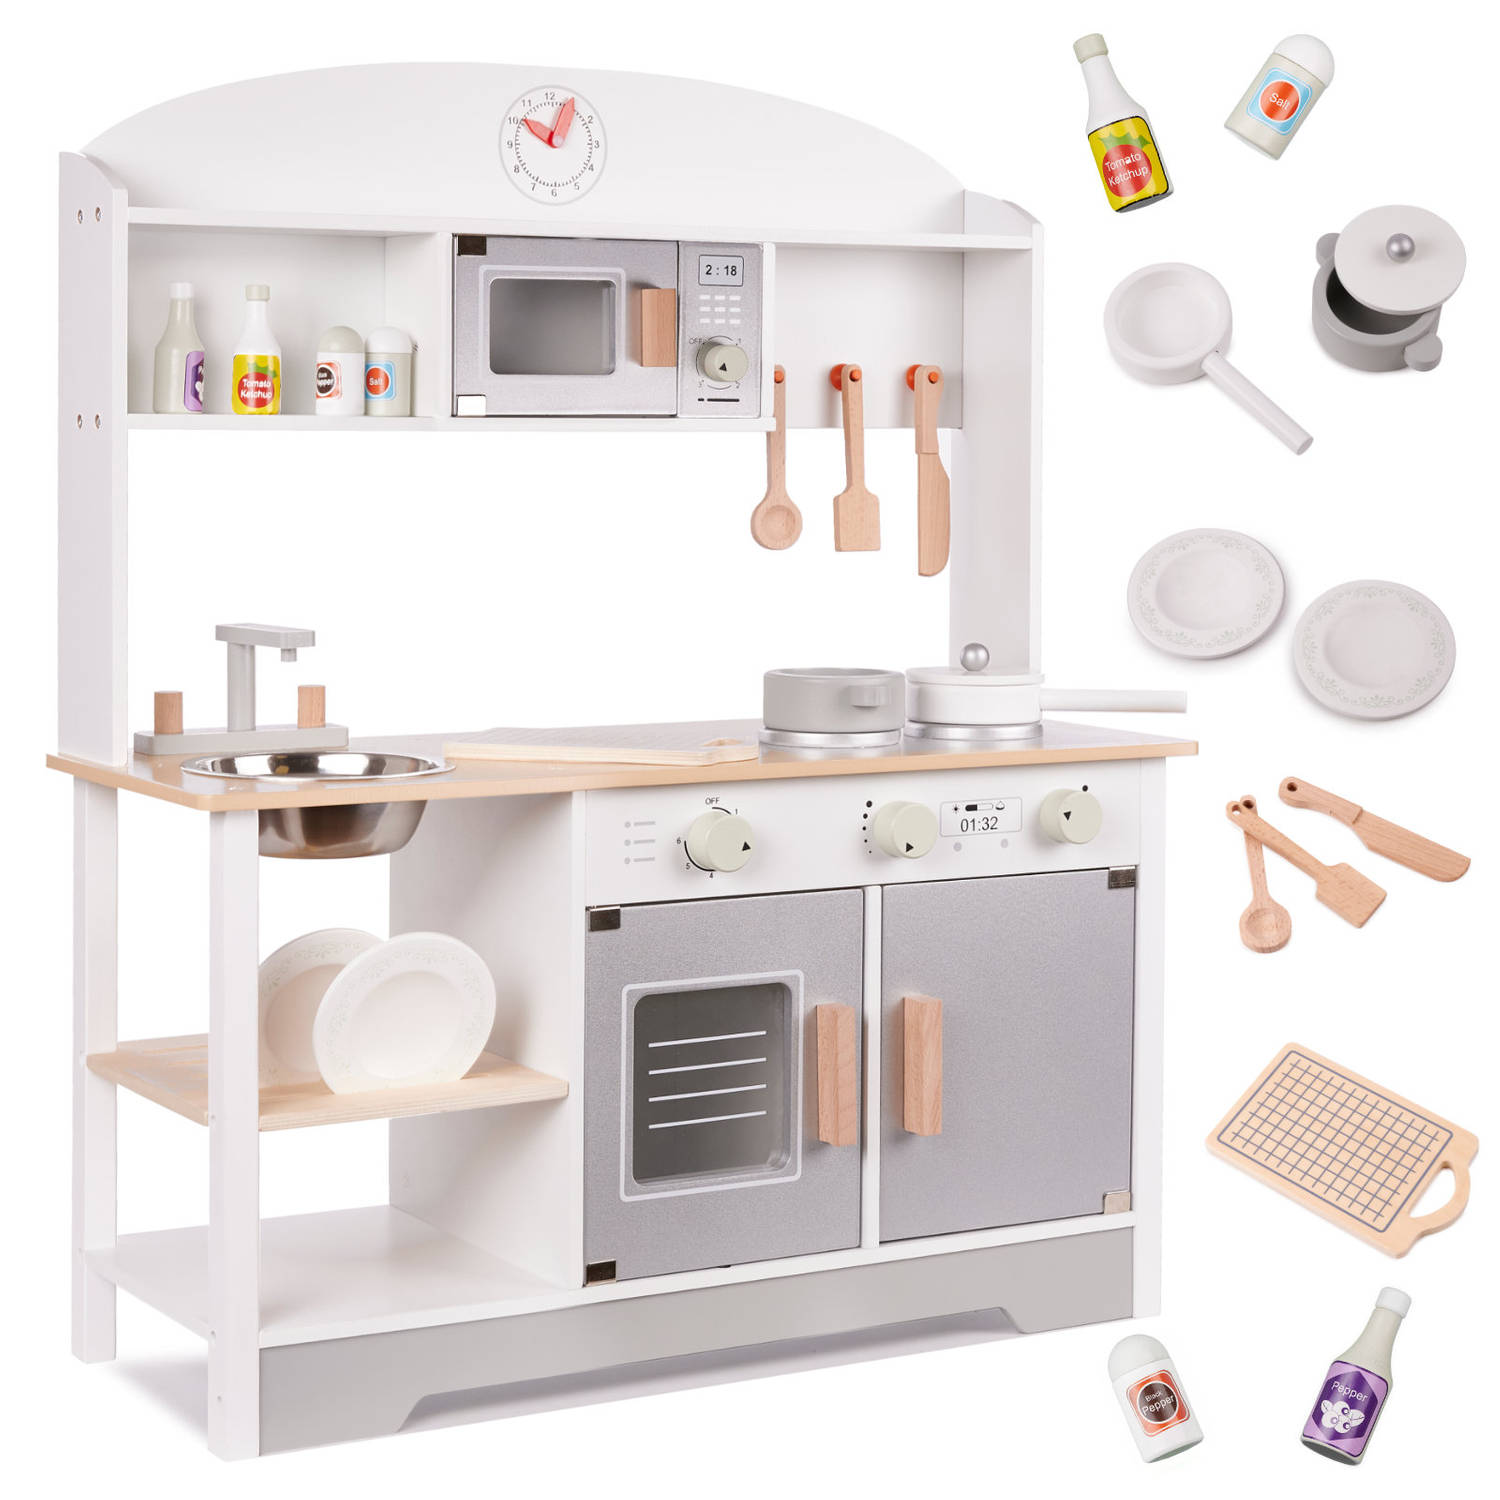 Luxe Moderne houten speelgoed keuken speelkeuken met gratis accessoires 68 cm x 25,5 cm x 82 cm